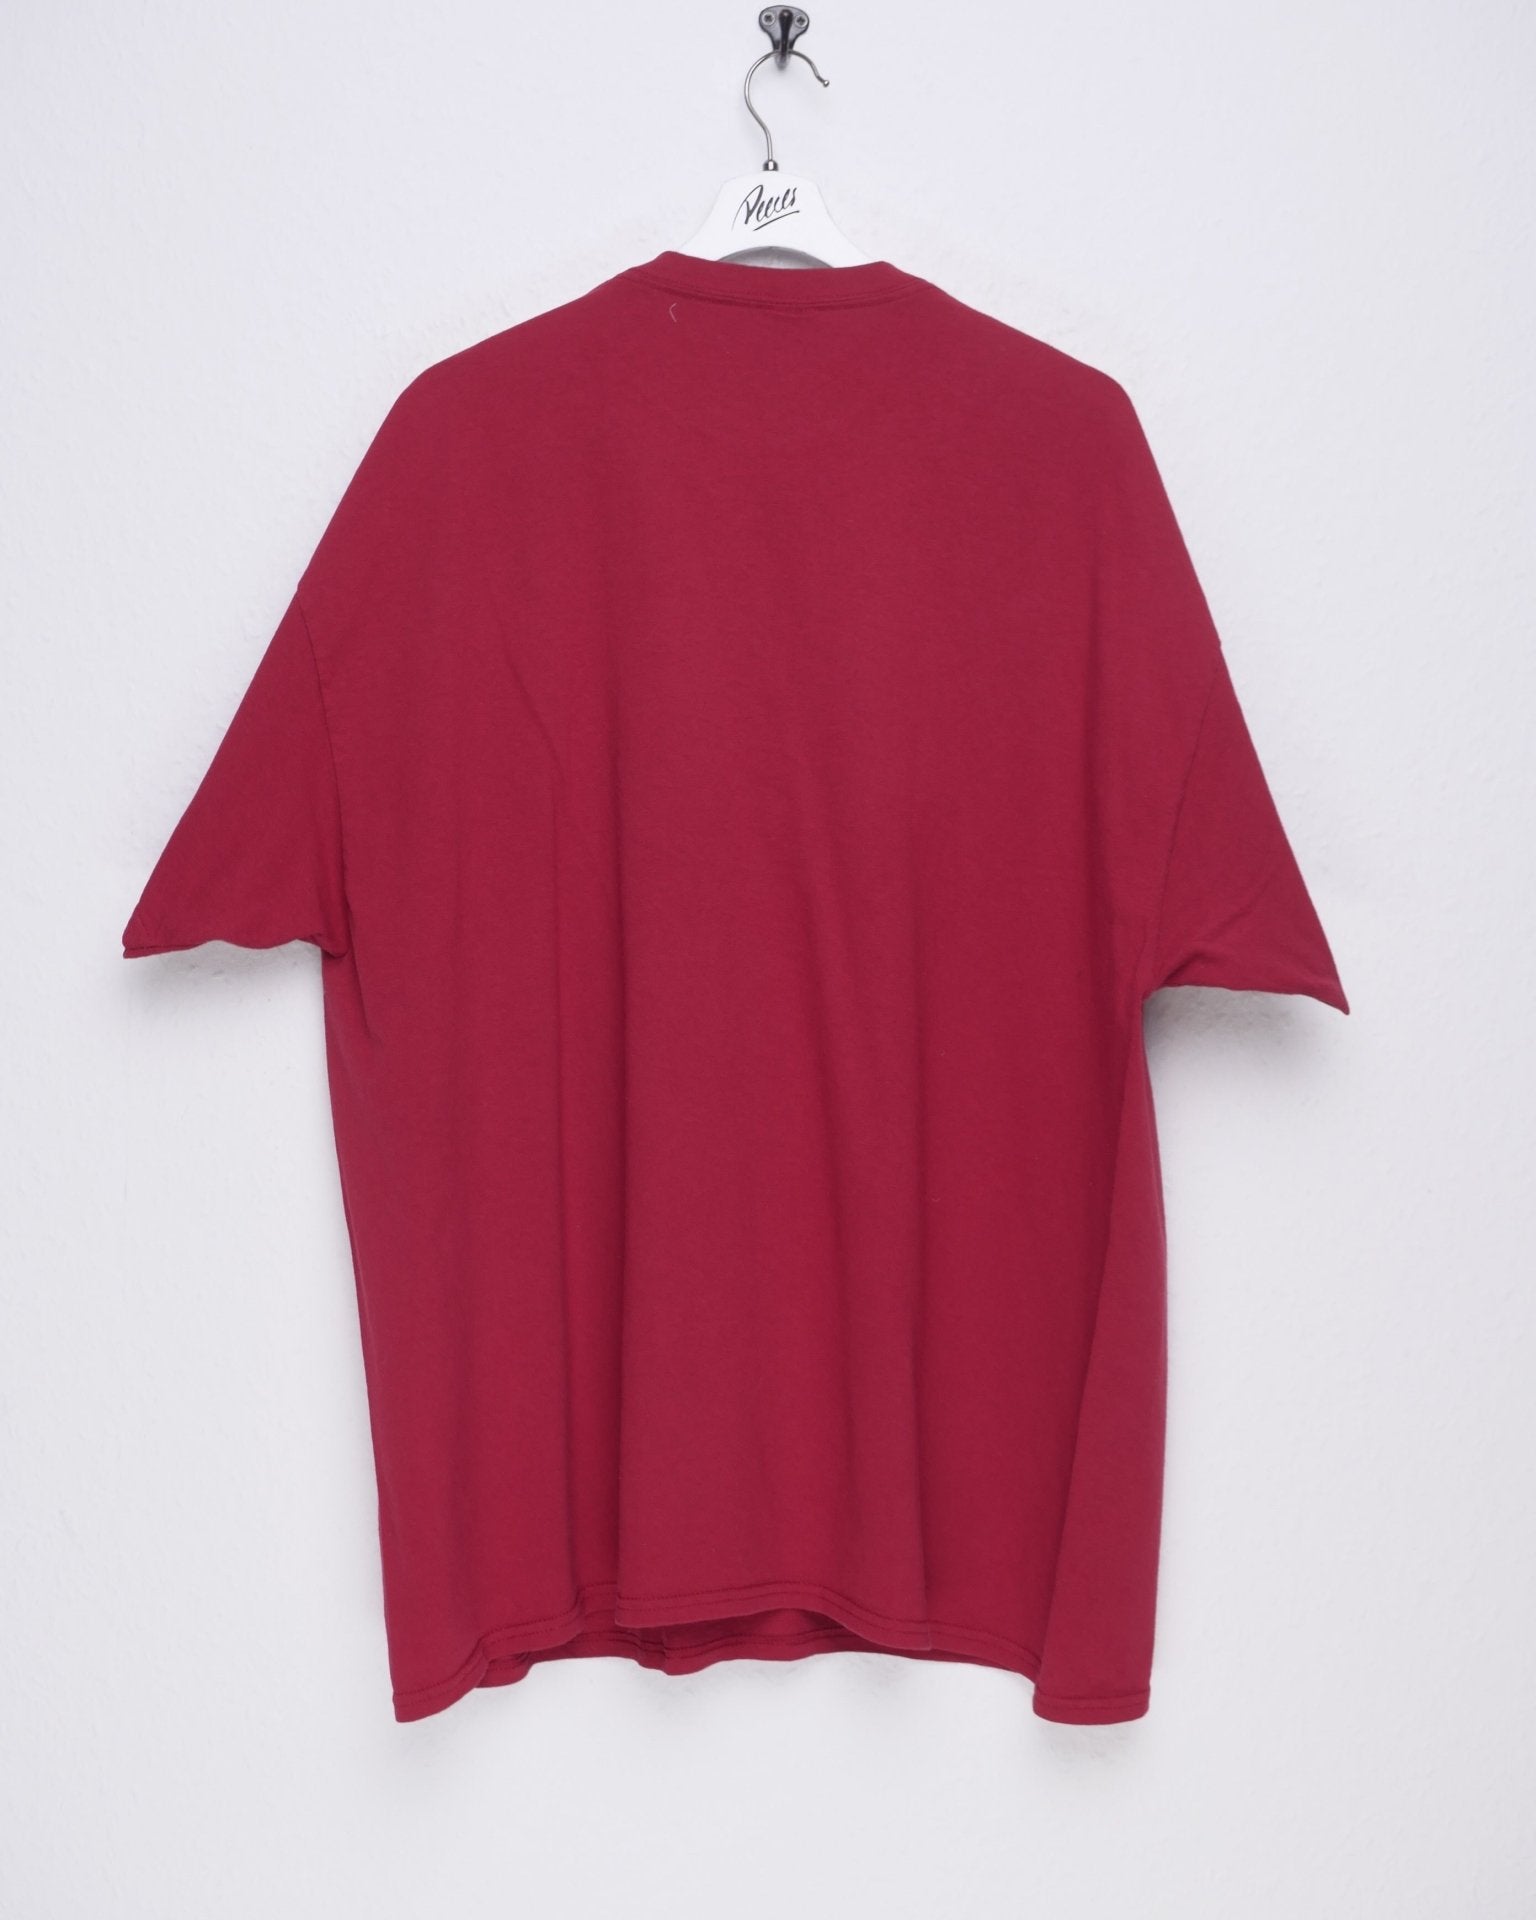 Gildan printed 'Rings' red Shirt - Peeces